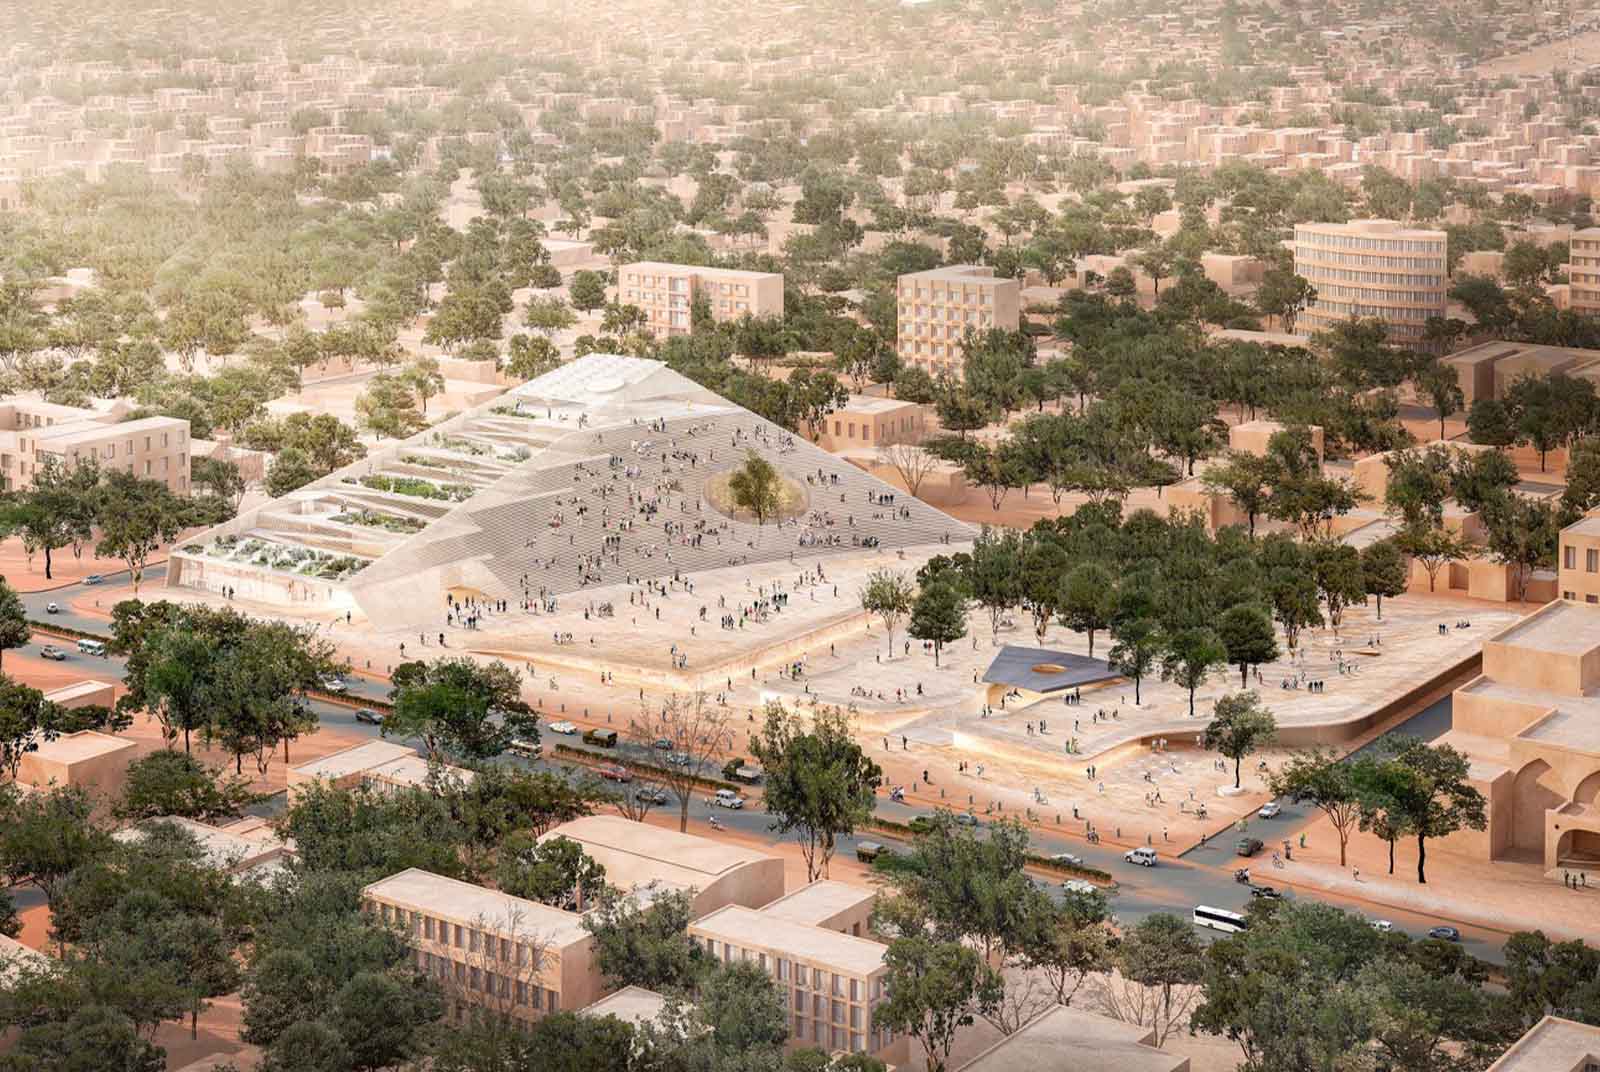 布吉納法索-西非-國會建築-Francis Kéré-議會-建築設計-城市規劃-都市設計